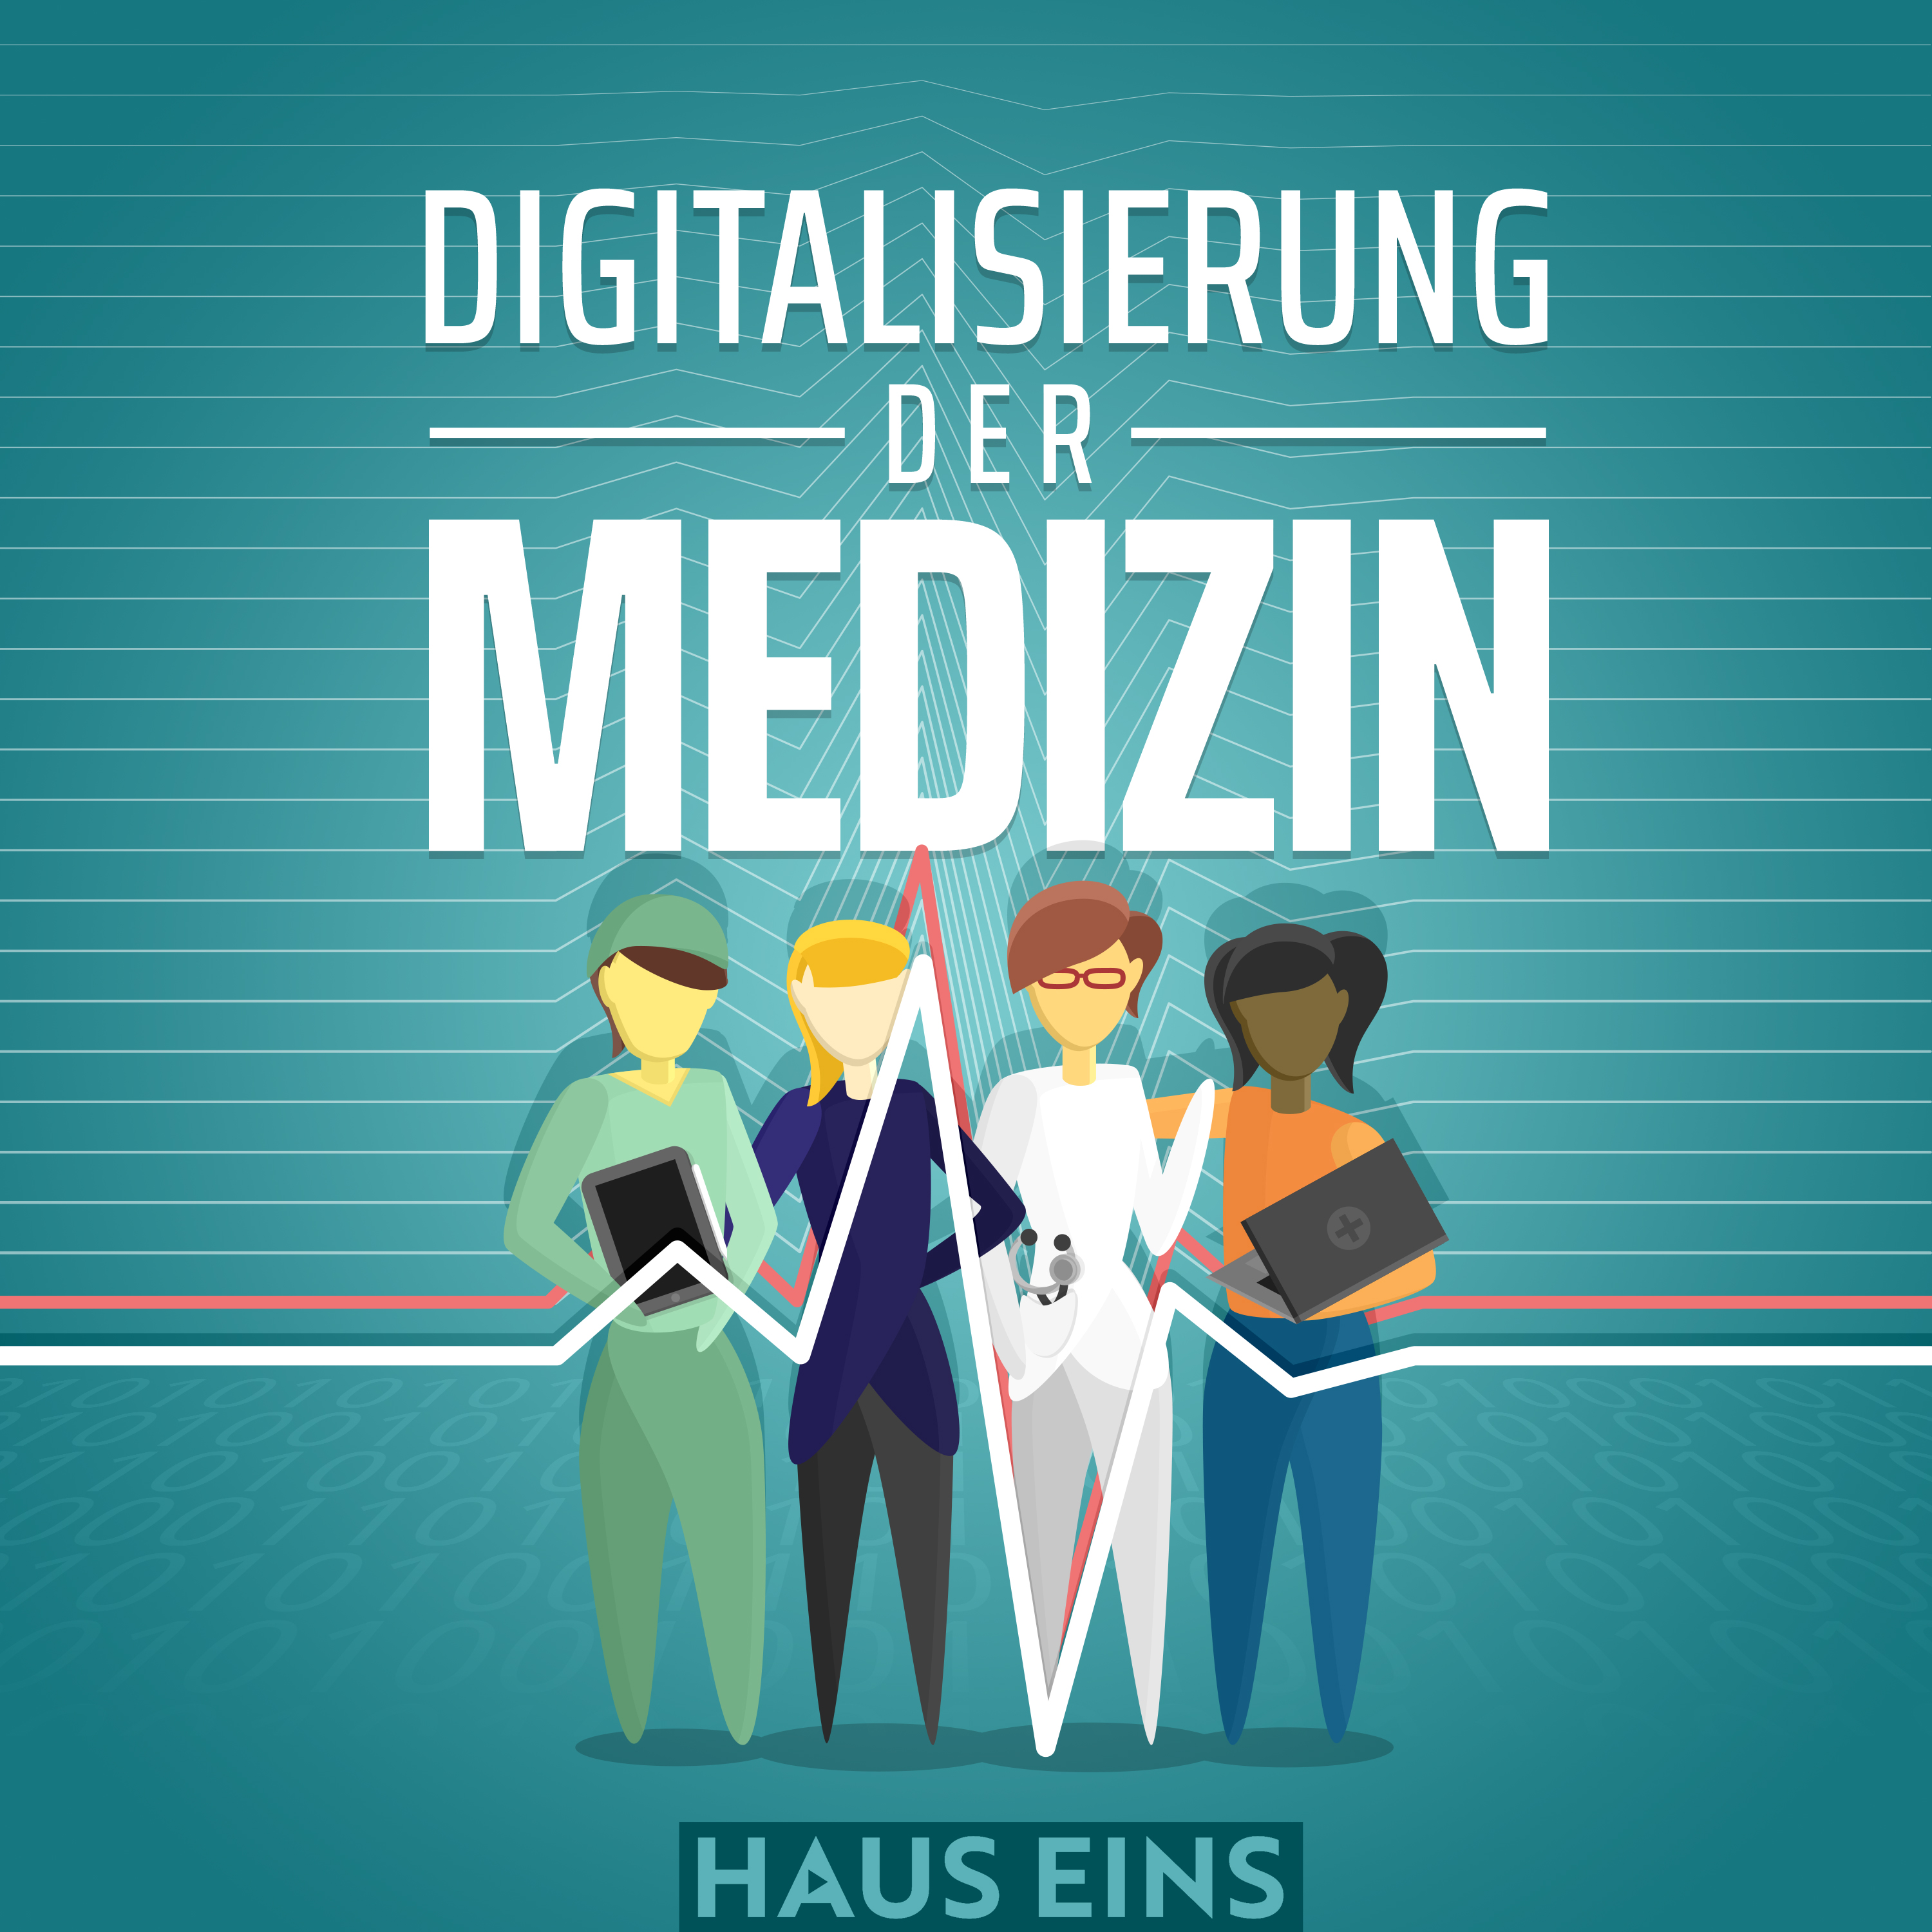 Erste Episode 2022 des Podcasts "Digitalisierung der Medizin" veröffentlicht